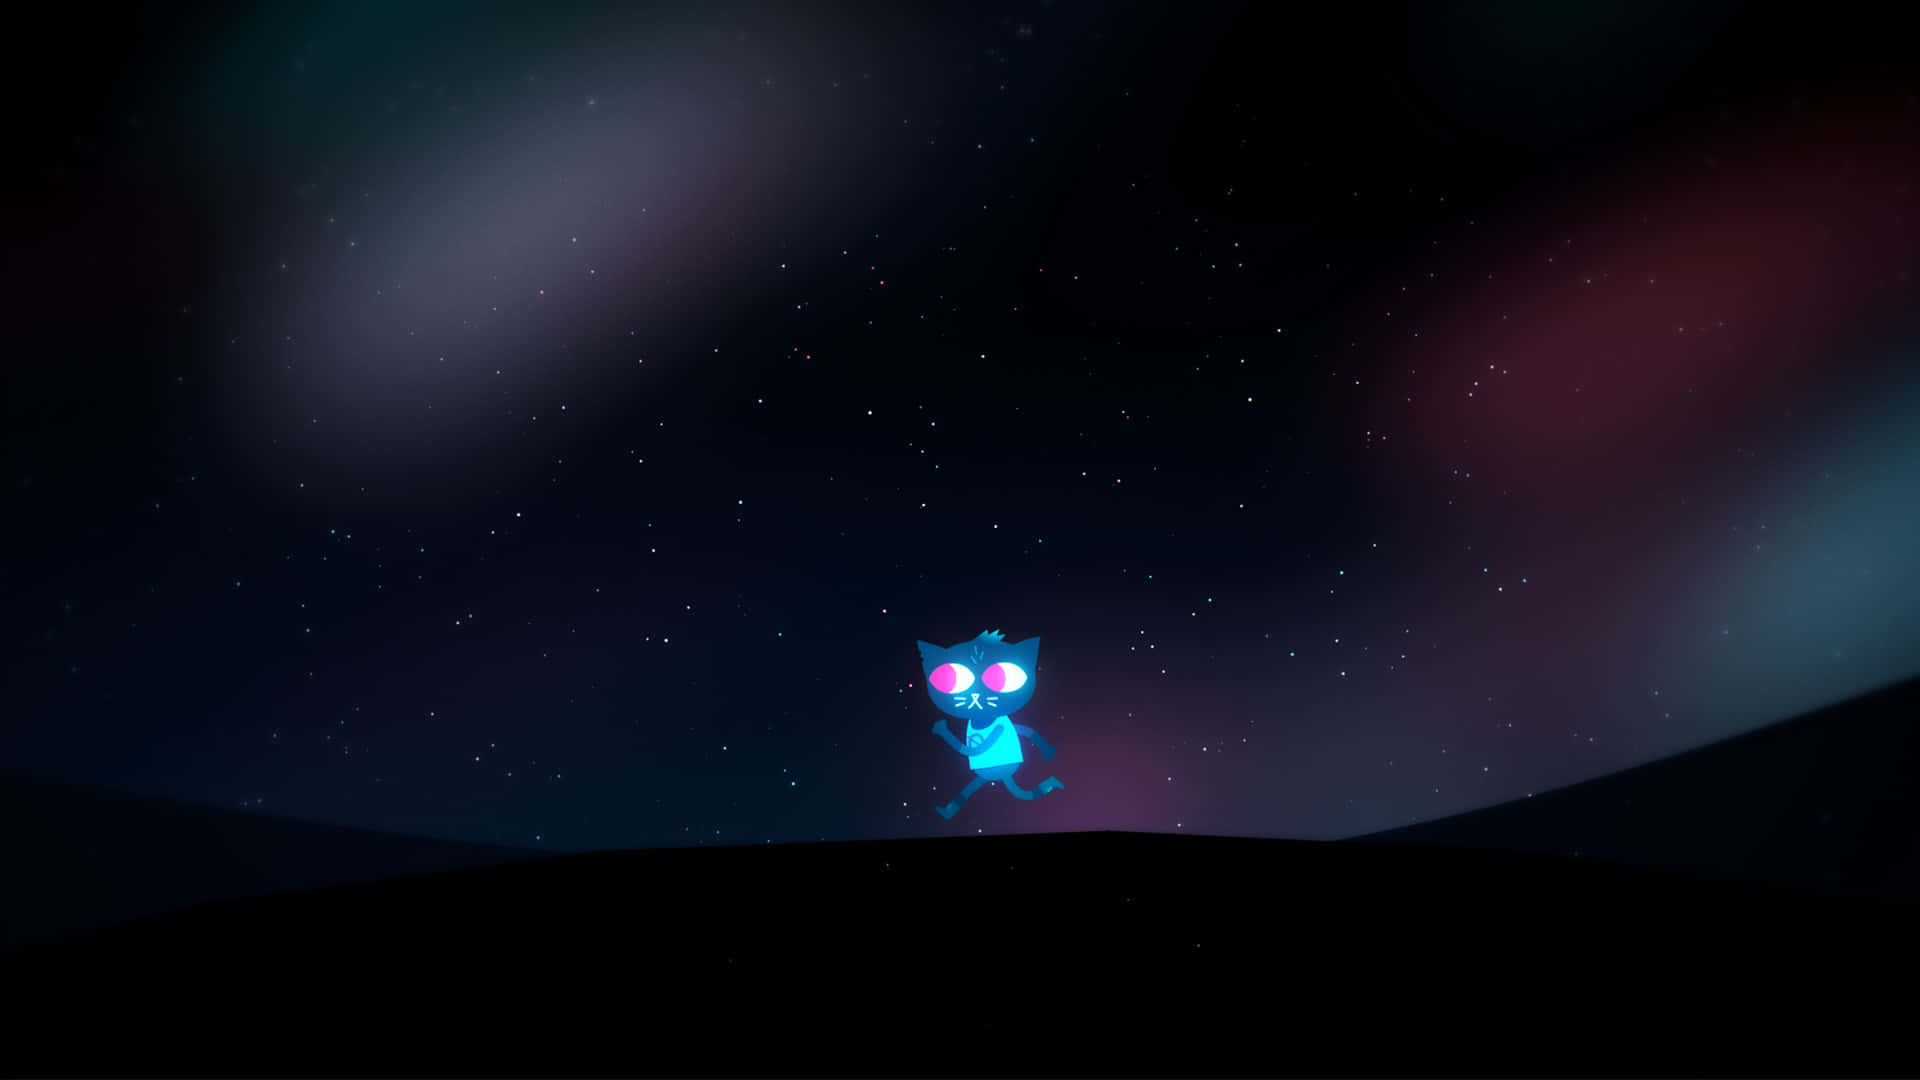 Eineblaue Katze Steht Auf Einem Hügel Mit Sternen Am Himmel. Wallpaper